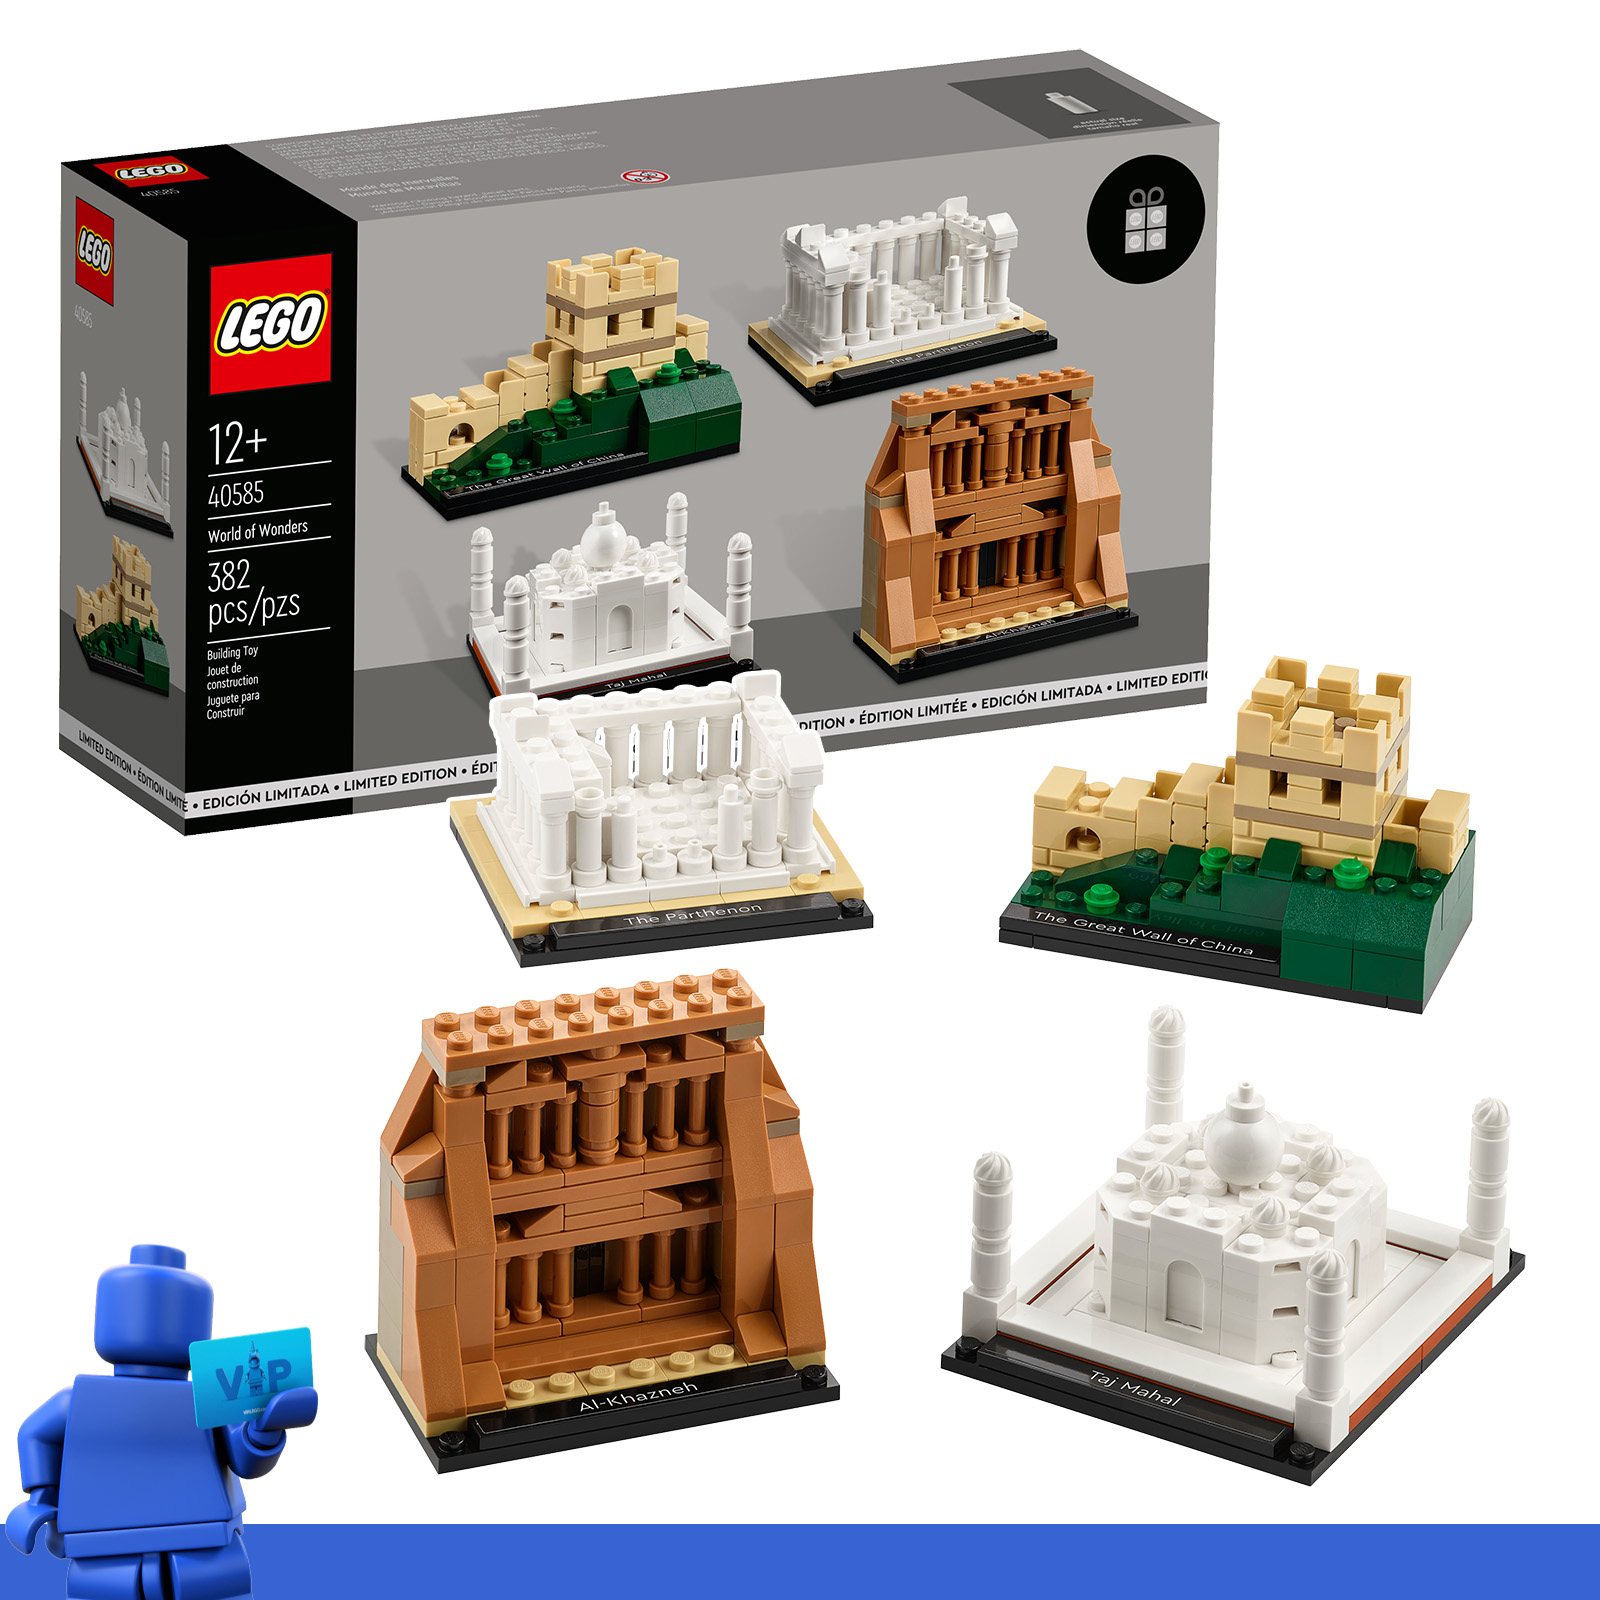 VIP-palkintokeskuksessa: LEGO-setit 40584 Birthday Diorama ja 40585 World of Wonders saatavilla vastineeksi VIP-pisteistä